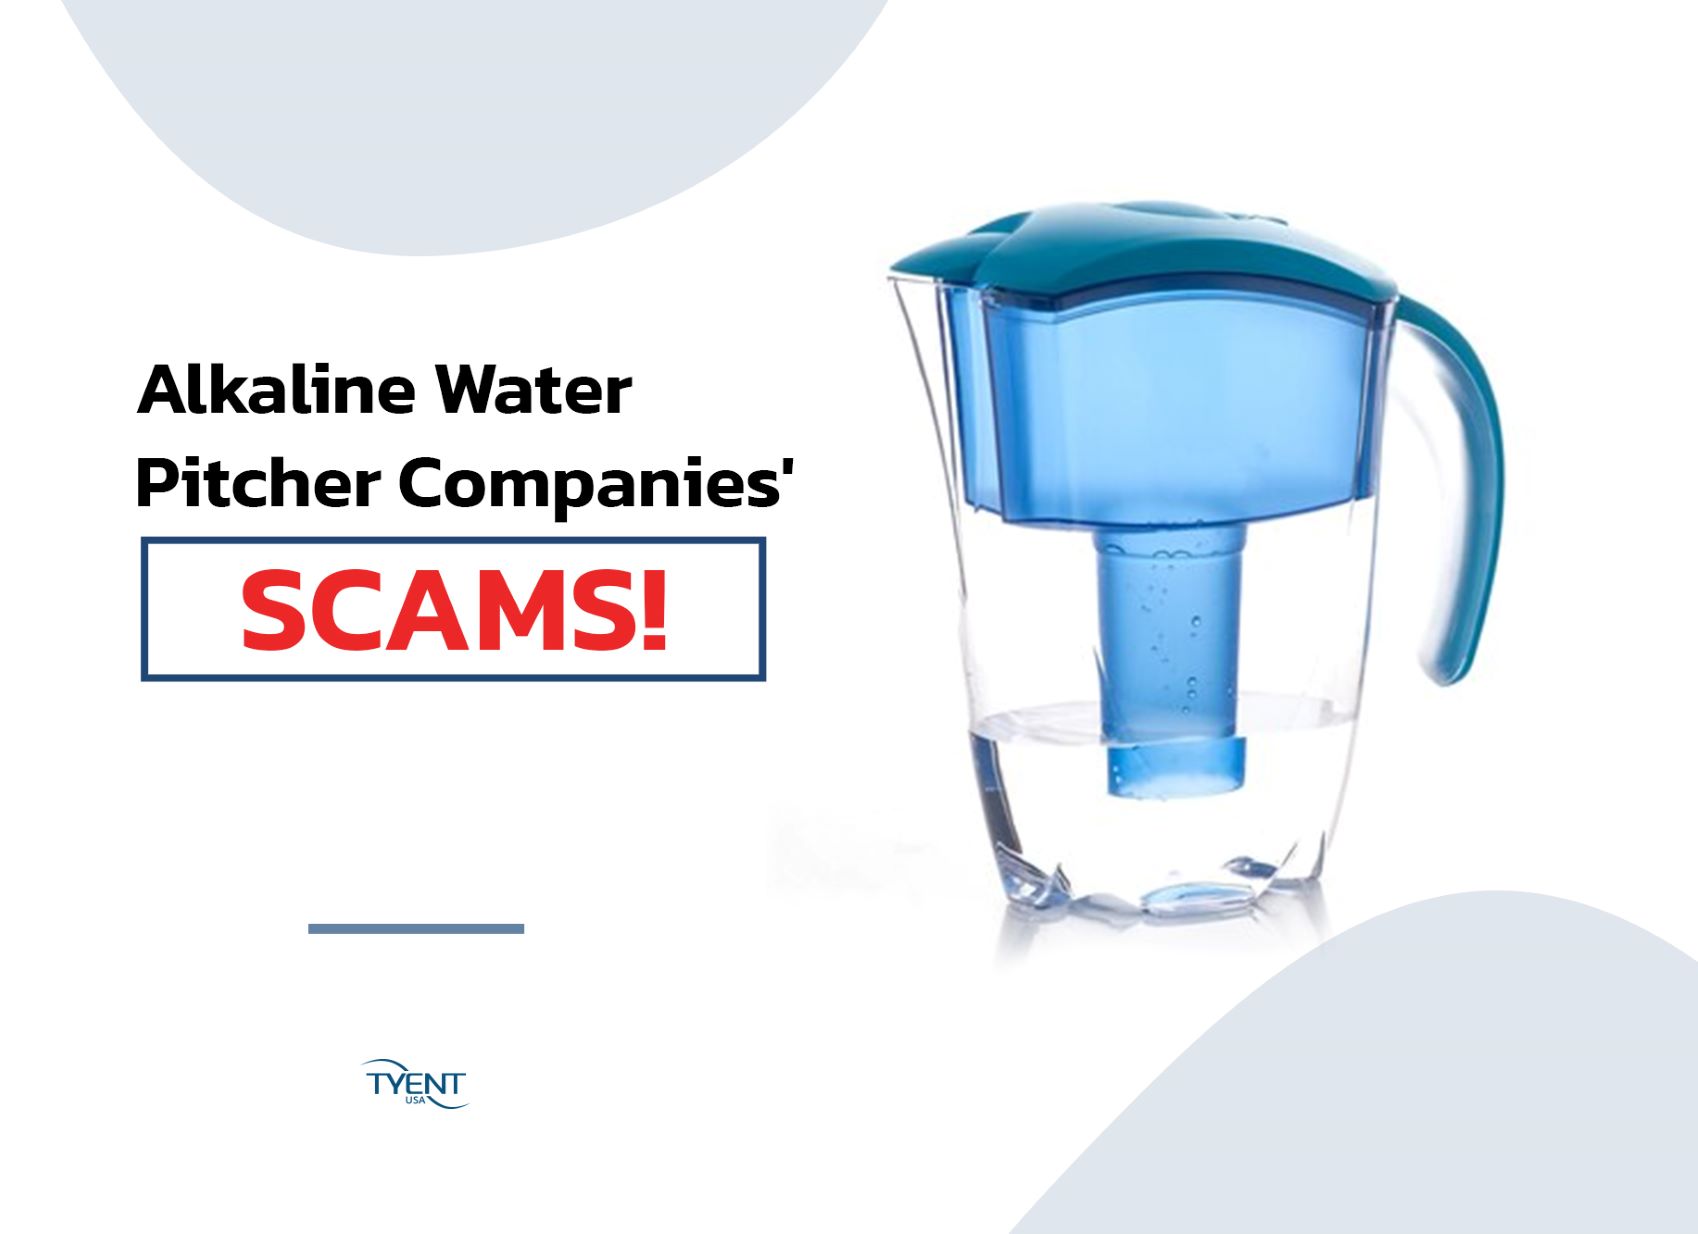 Alkaline Water Pitcher Companies Scam